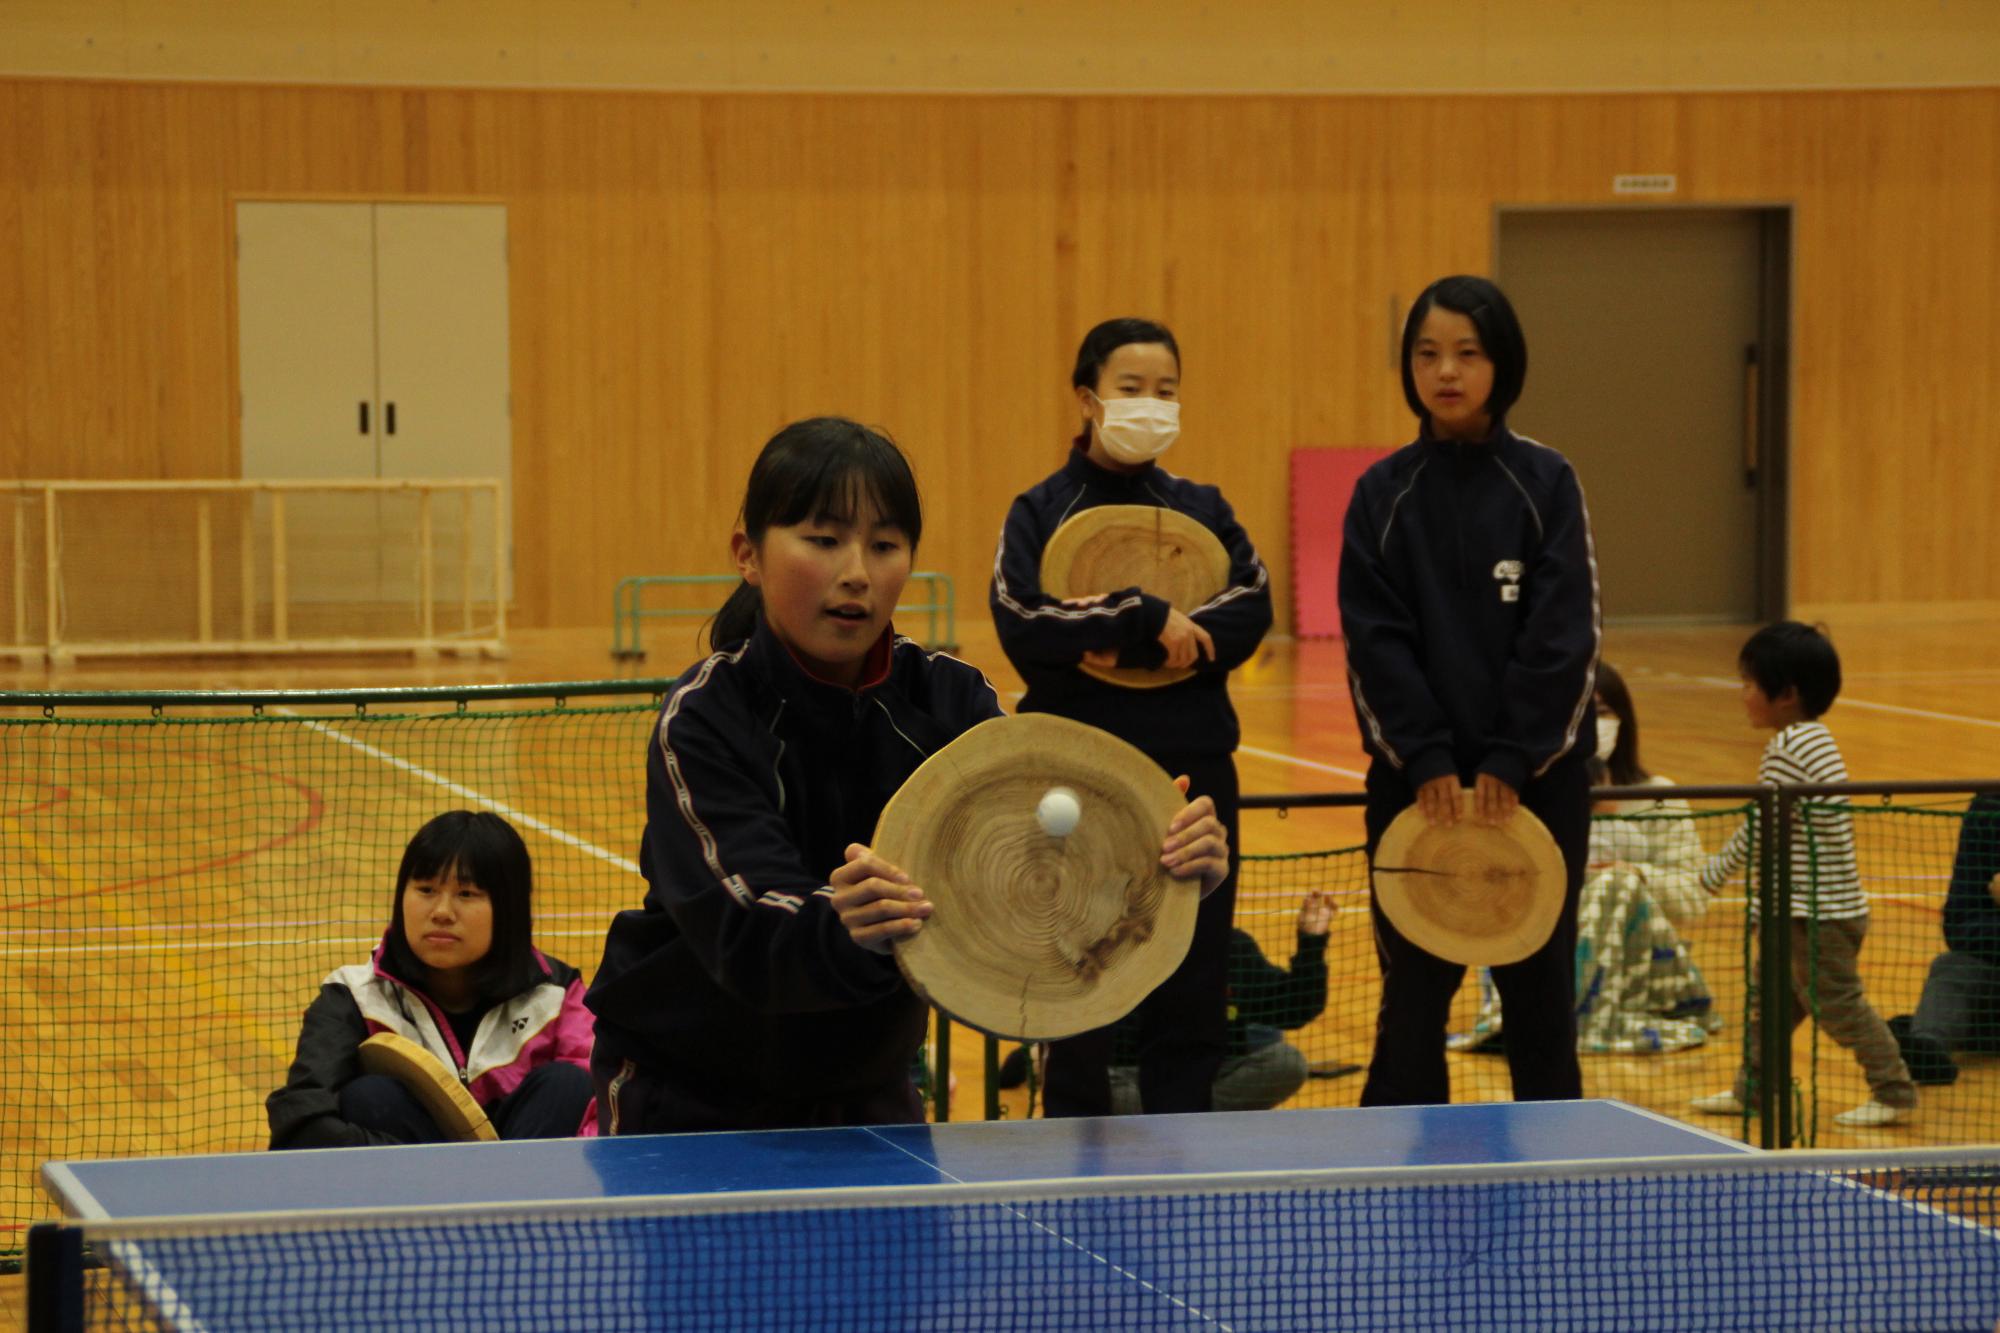 丸太ラケットで卓球の球を捉え返す女子中学生を正面側から撮った写真